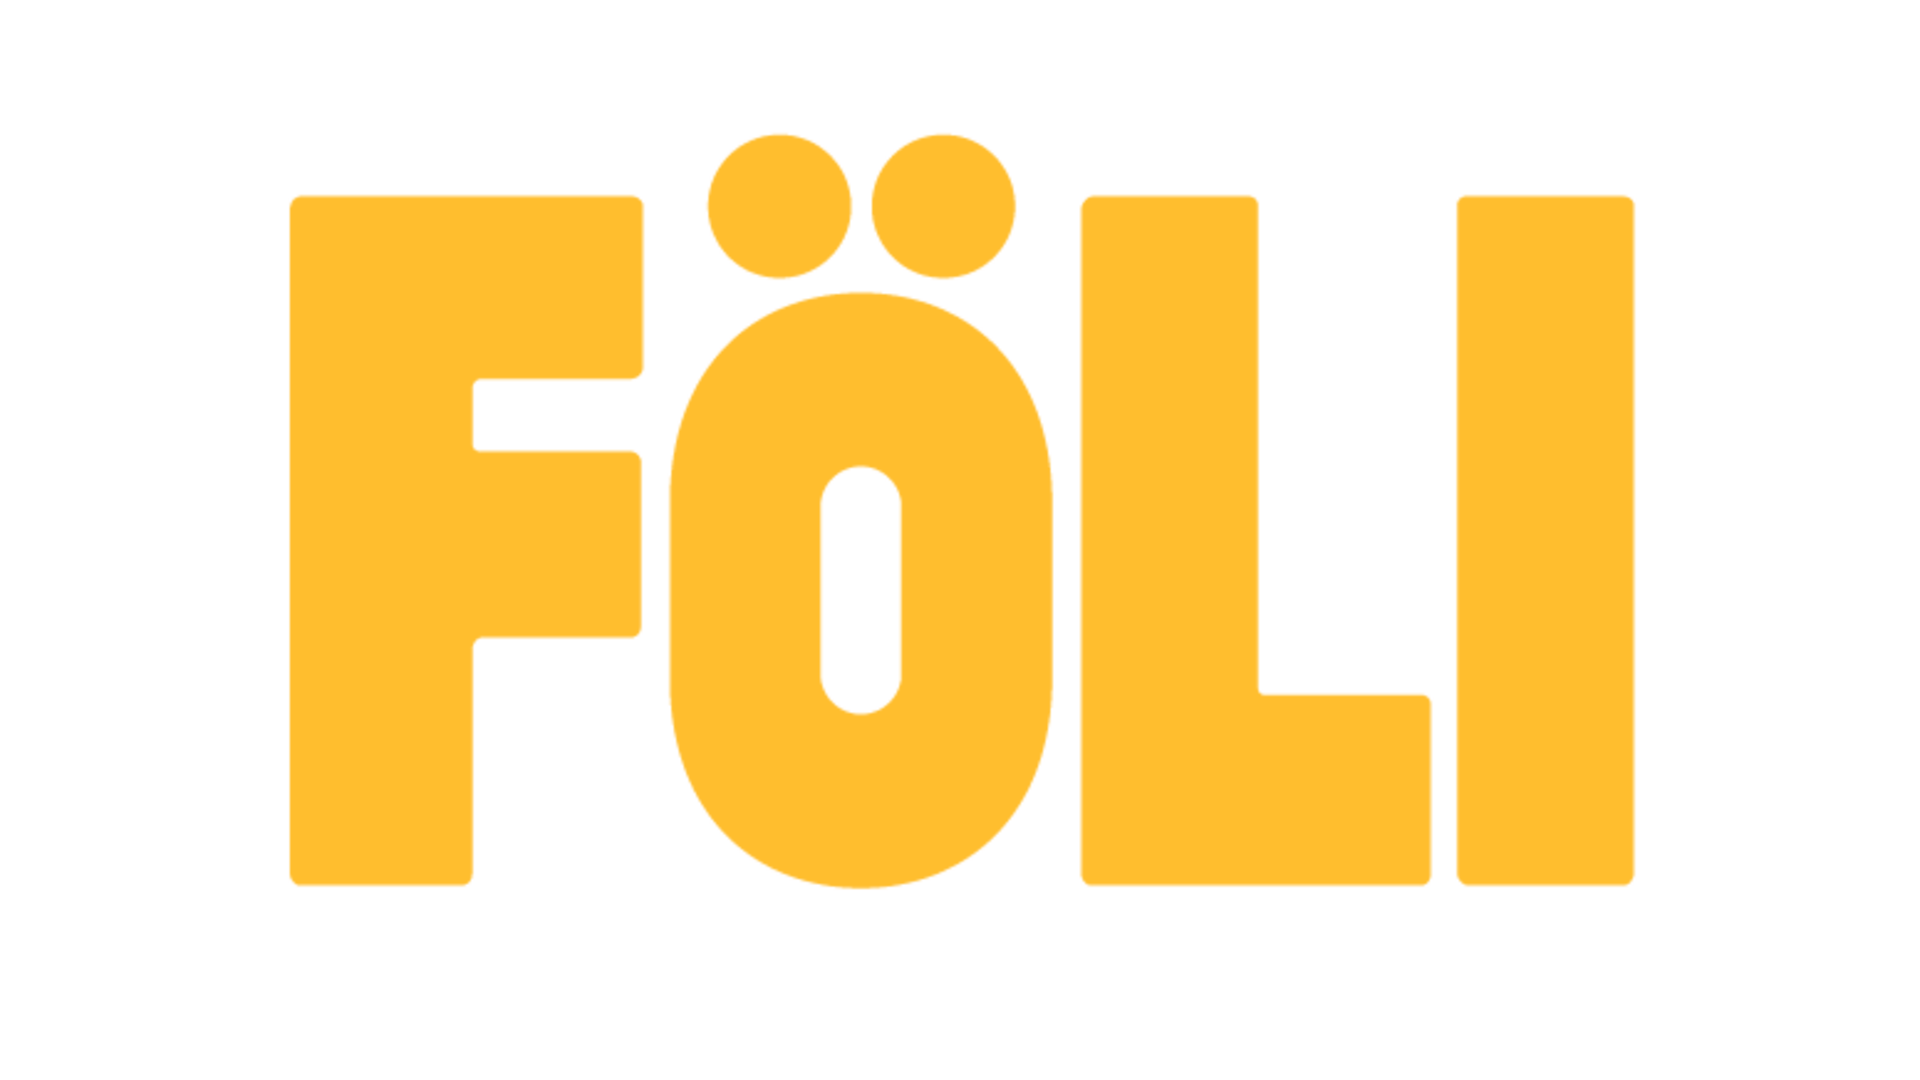 Joukkoliikenne Fölin keltainen logo